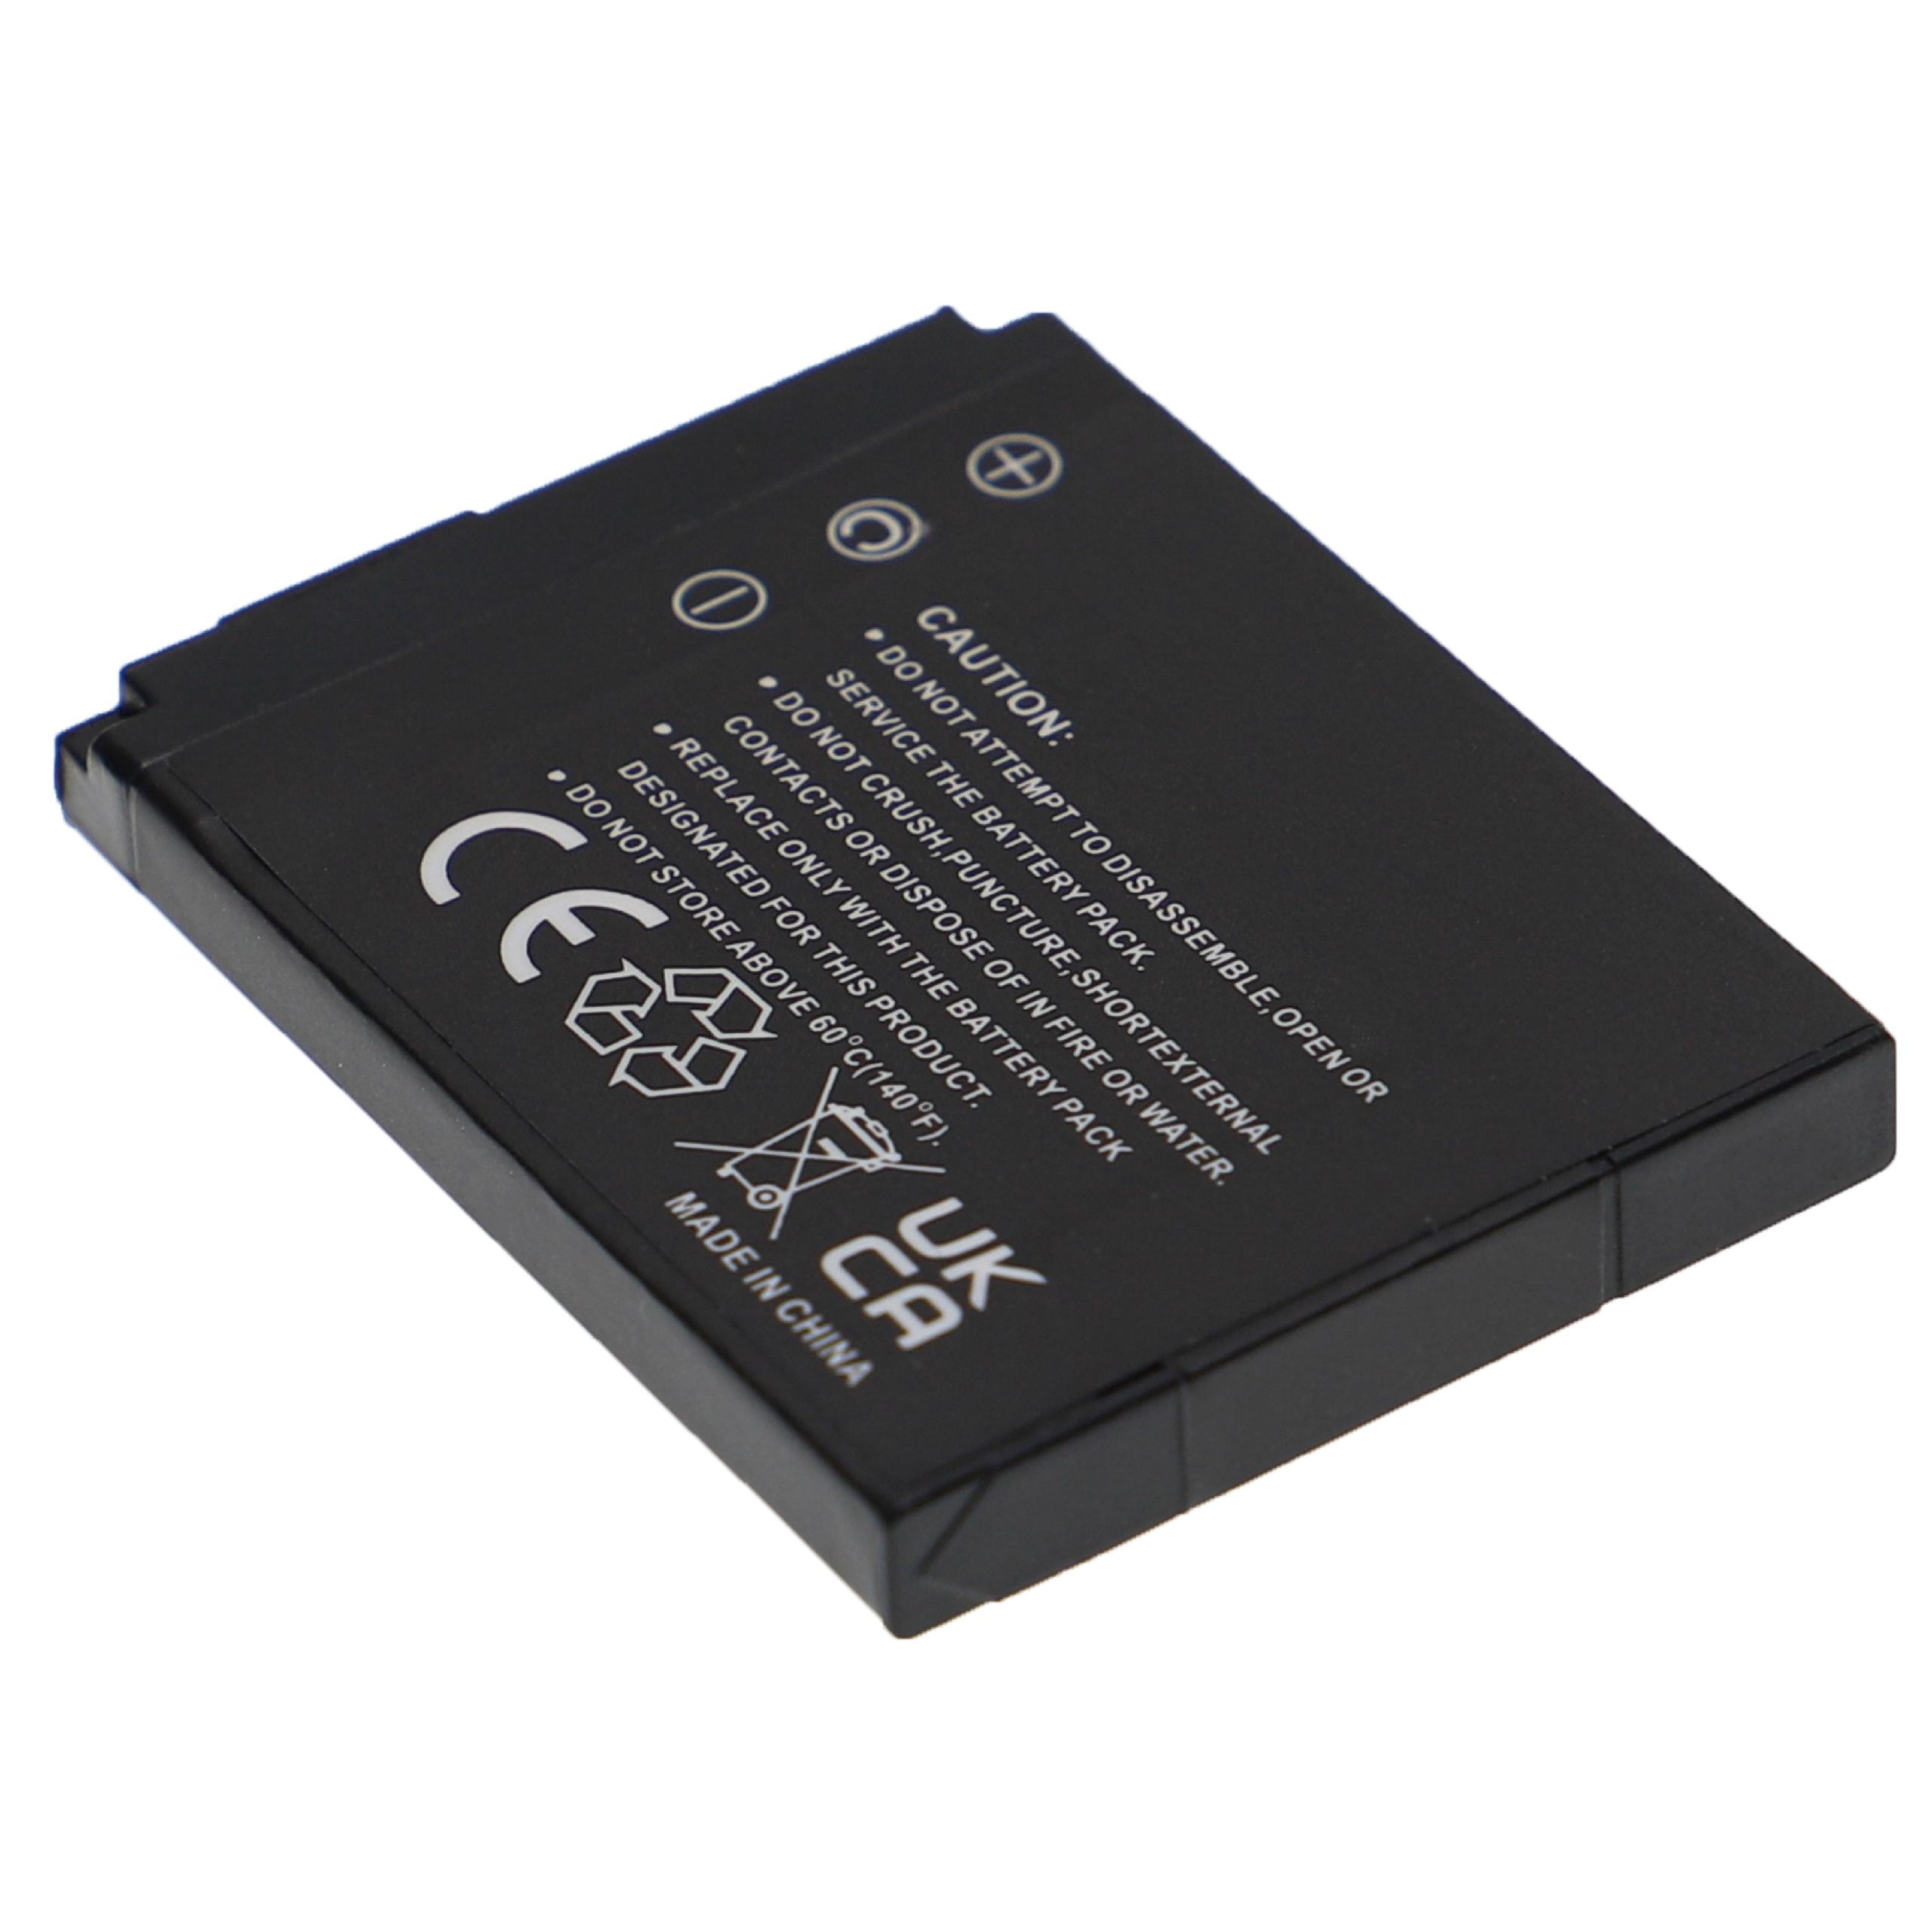 Batterie remplace Sony NP-BD1, NP-FD1 pour appareil photo - 650mAh 3,7V Li-ion